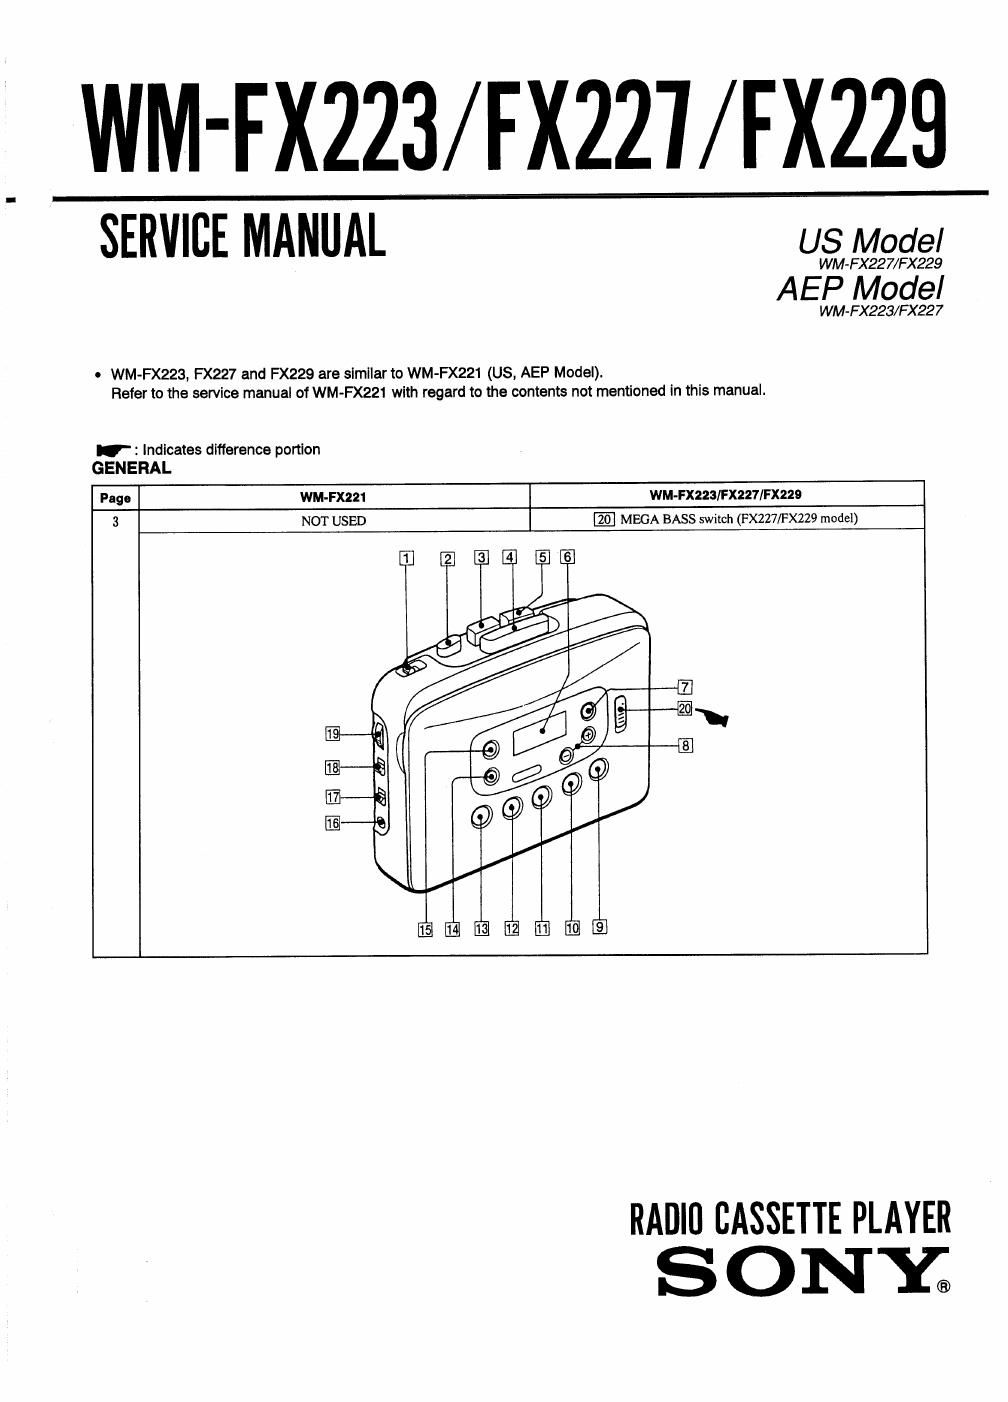 sony wm fx 227 service manual